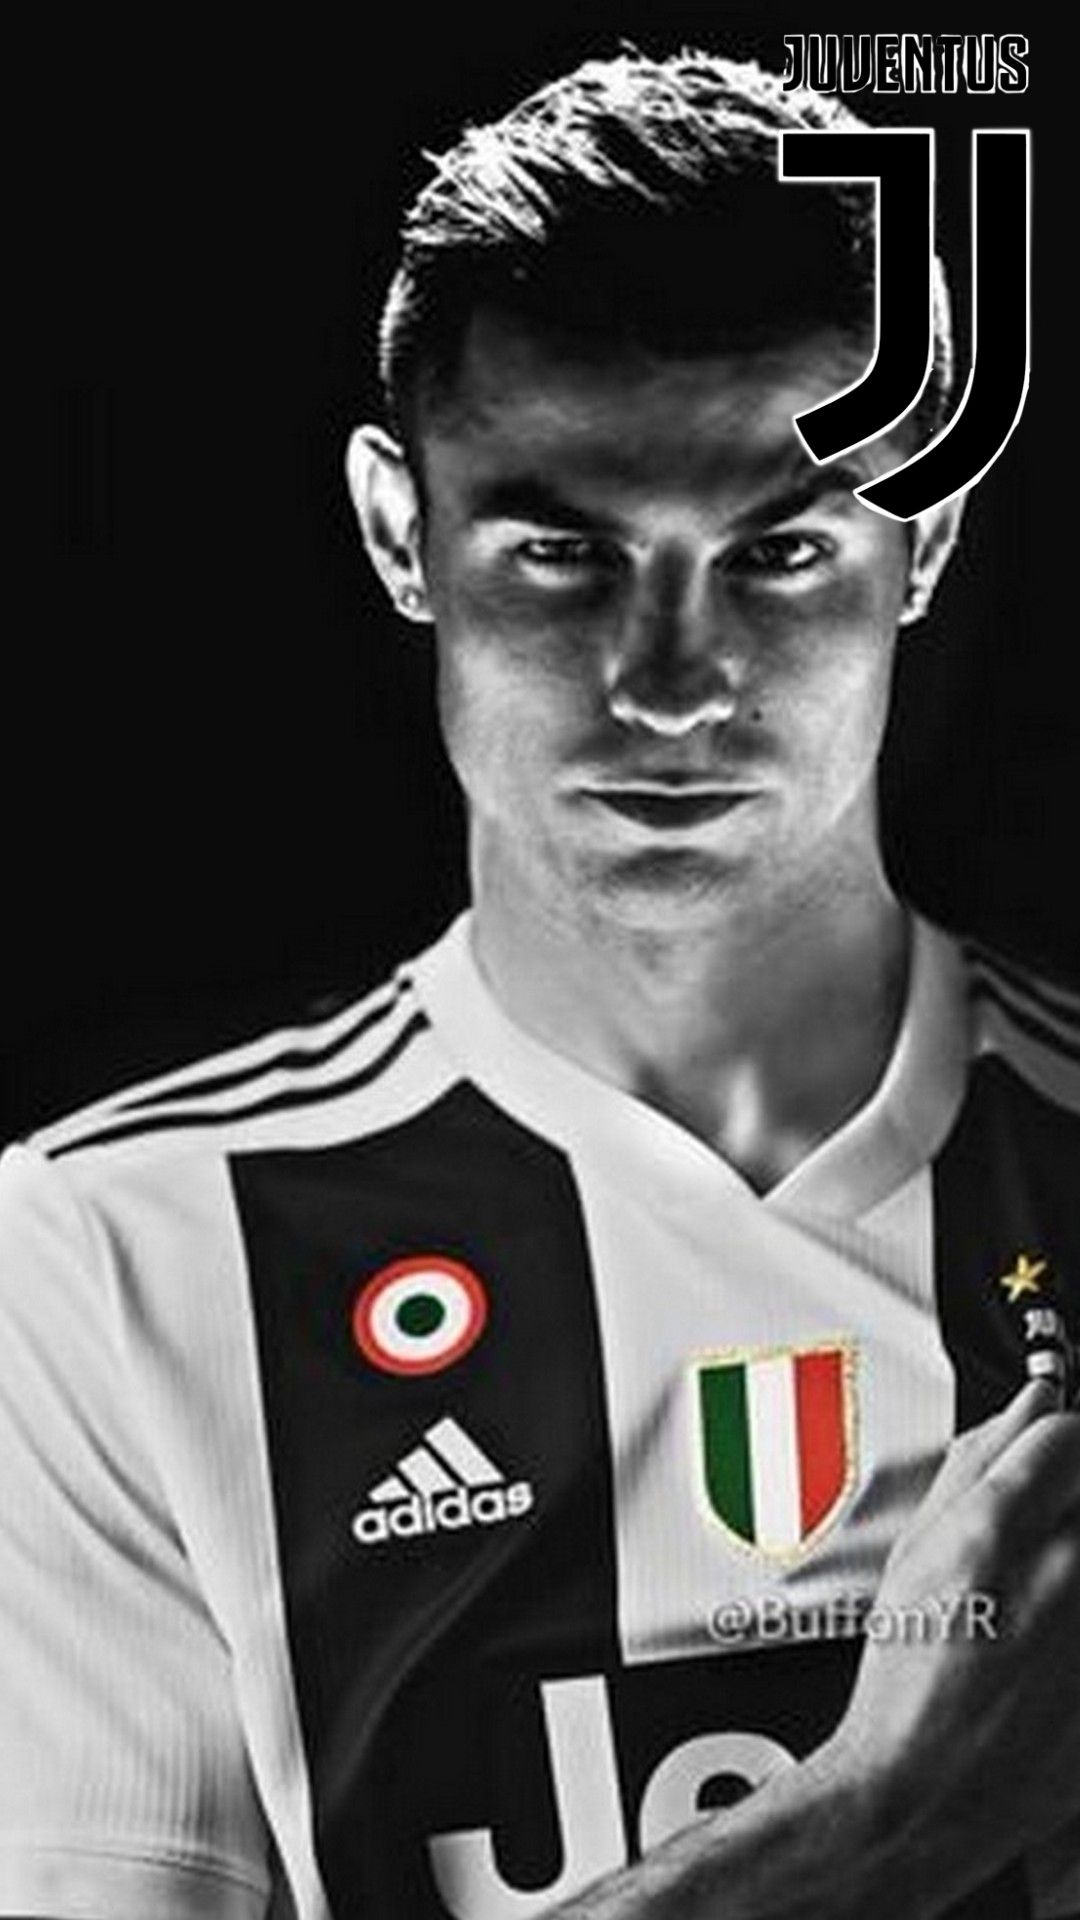 Cristiano Ronaldo Juventus iPhone X Fondo de pantalla | Fondo de pantalla de fútbol 2019